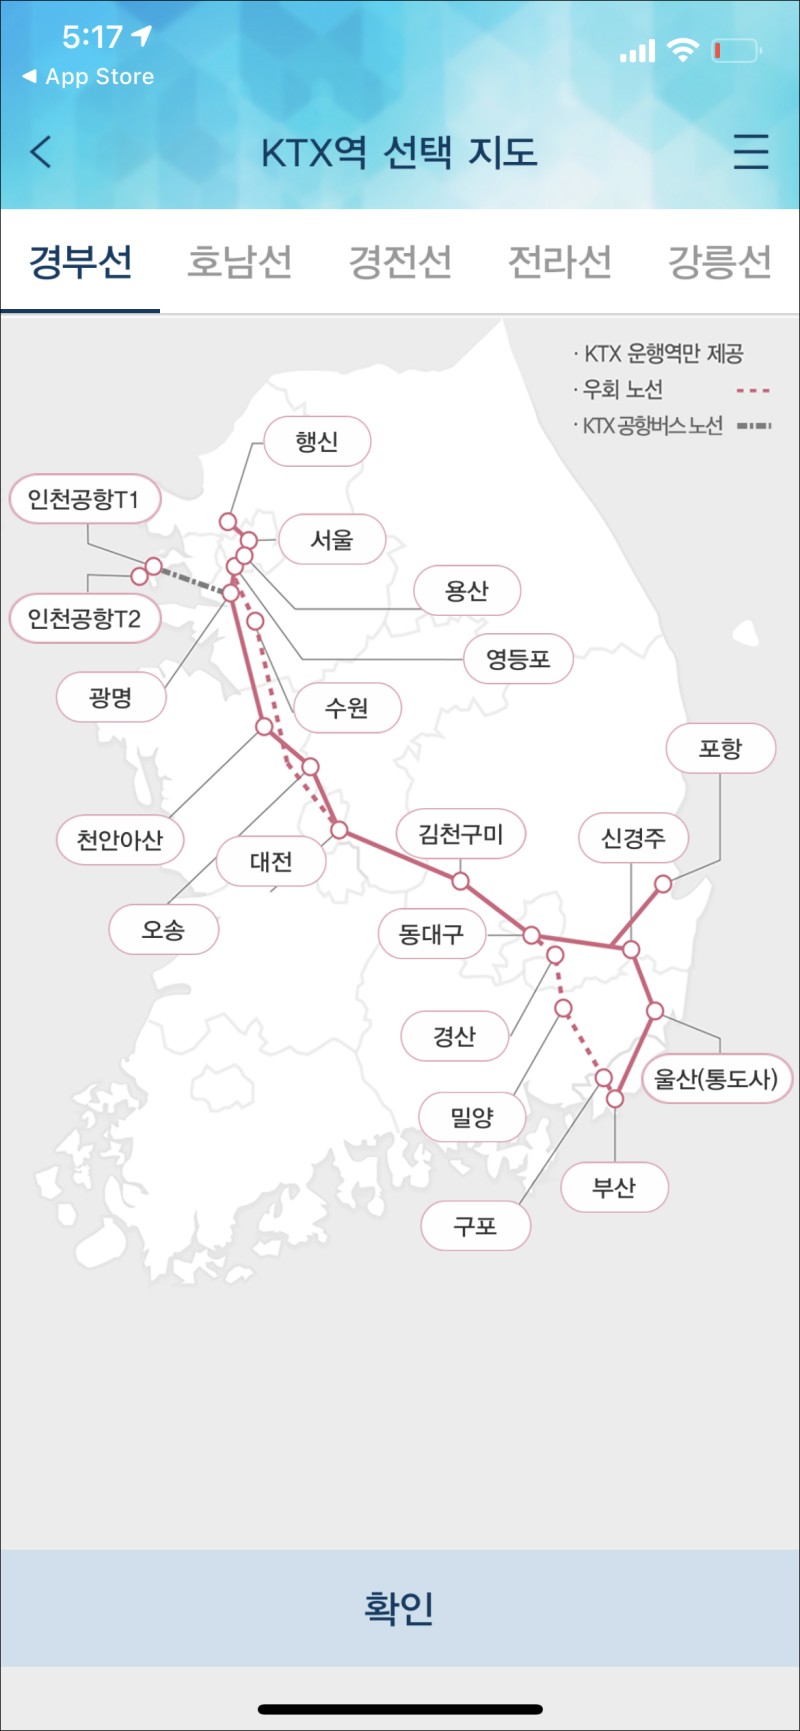 Ktx 예매 열차시간표 확인 방법과 노선 정보! : 네이버 블로그